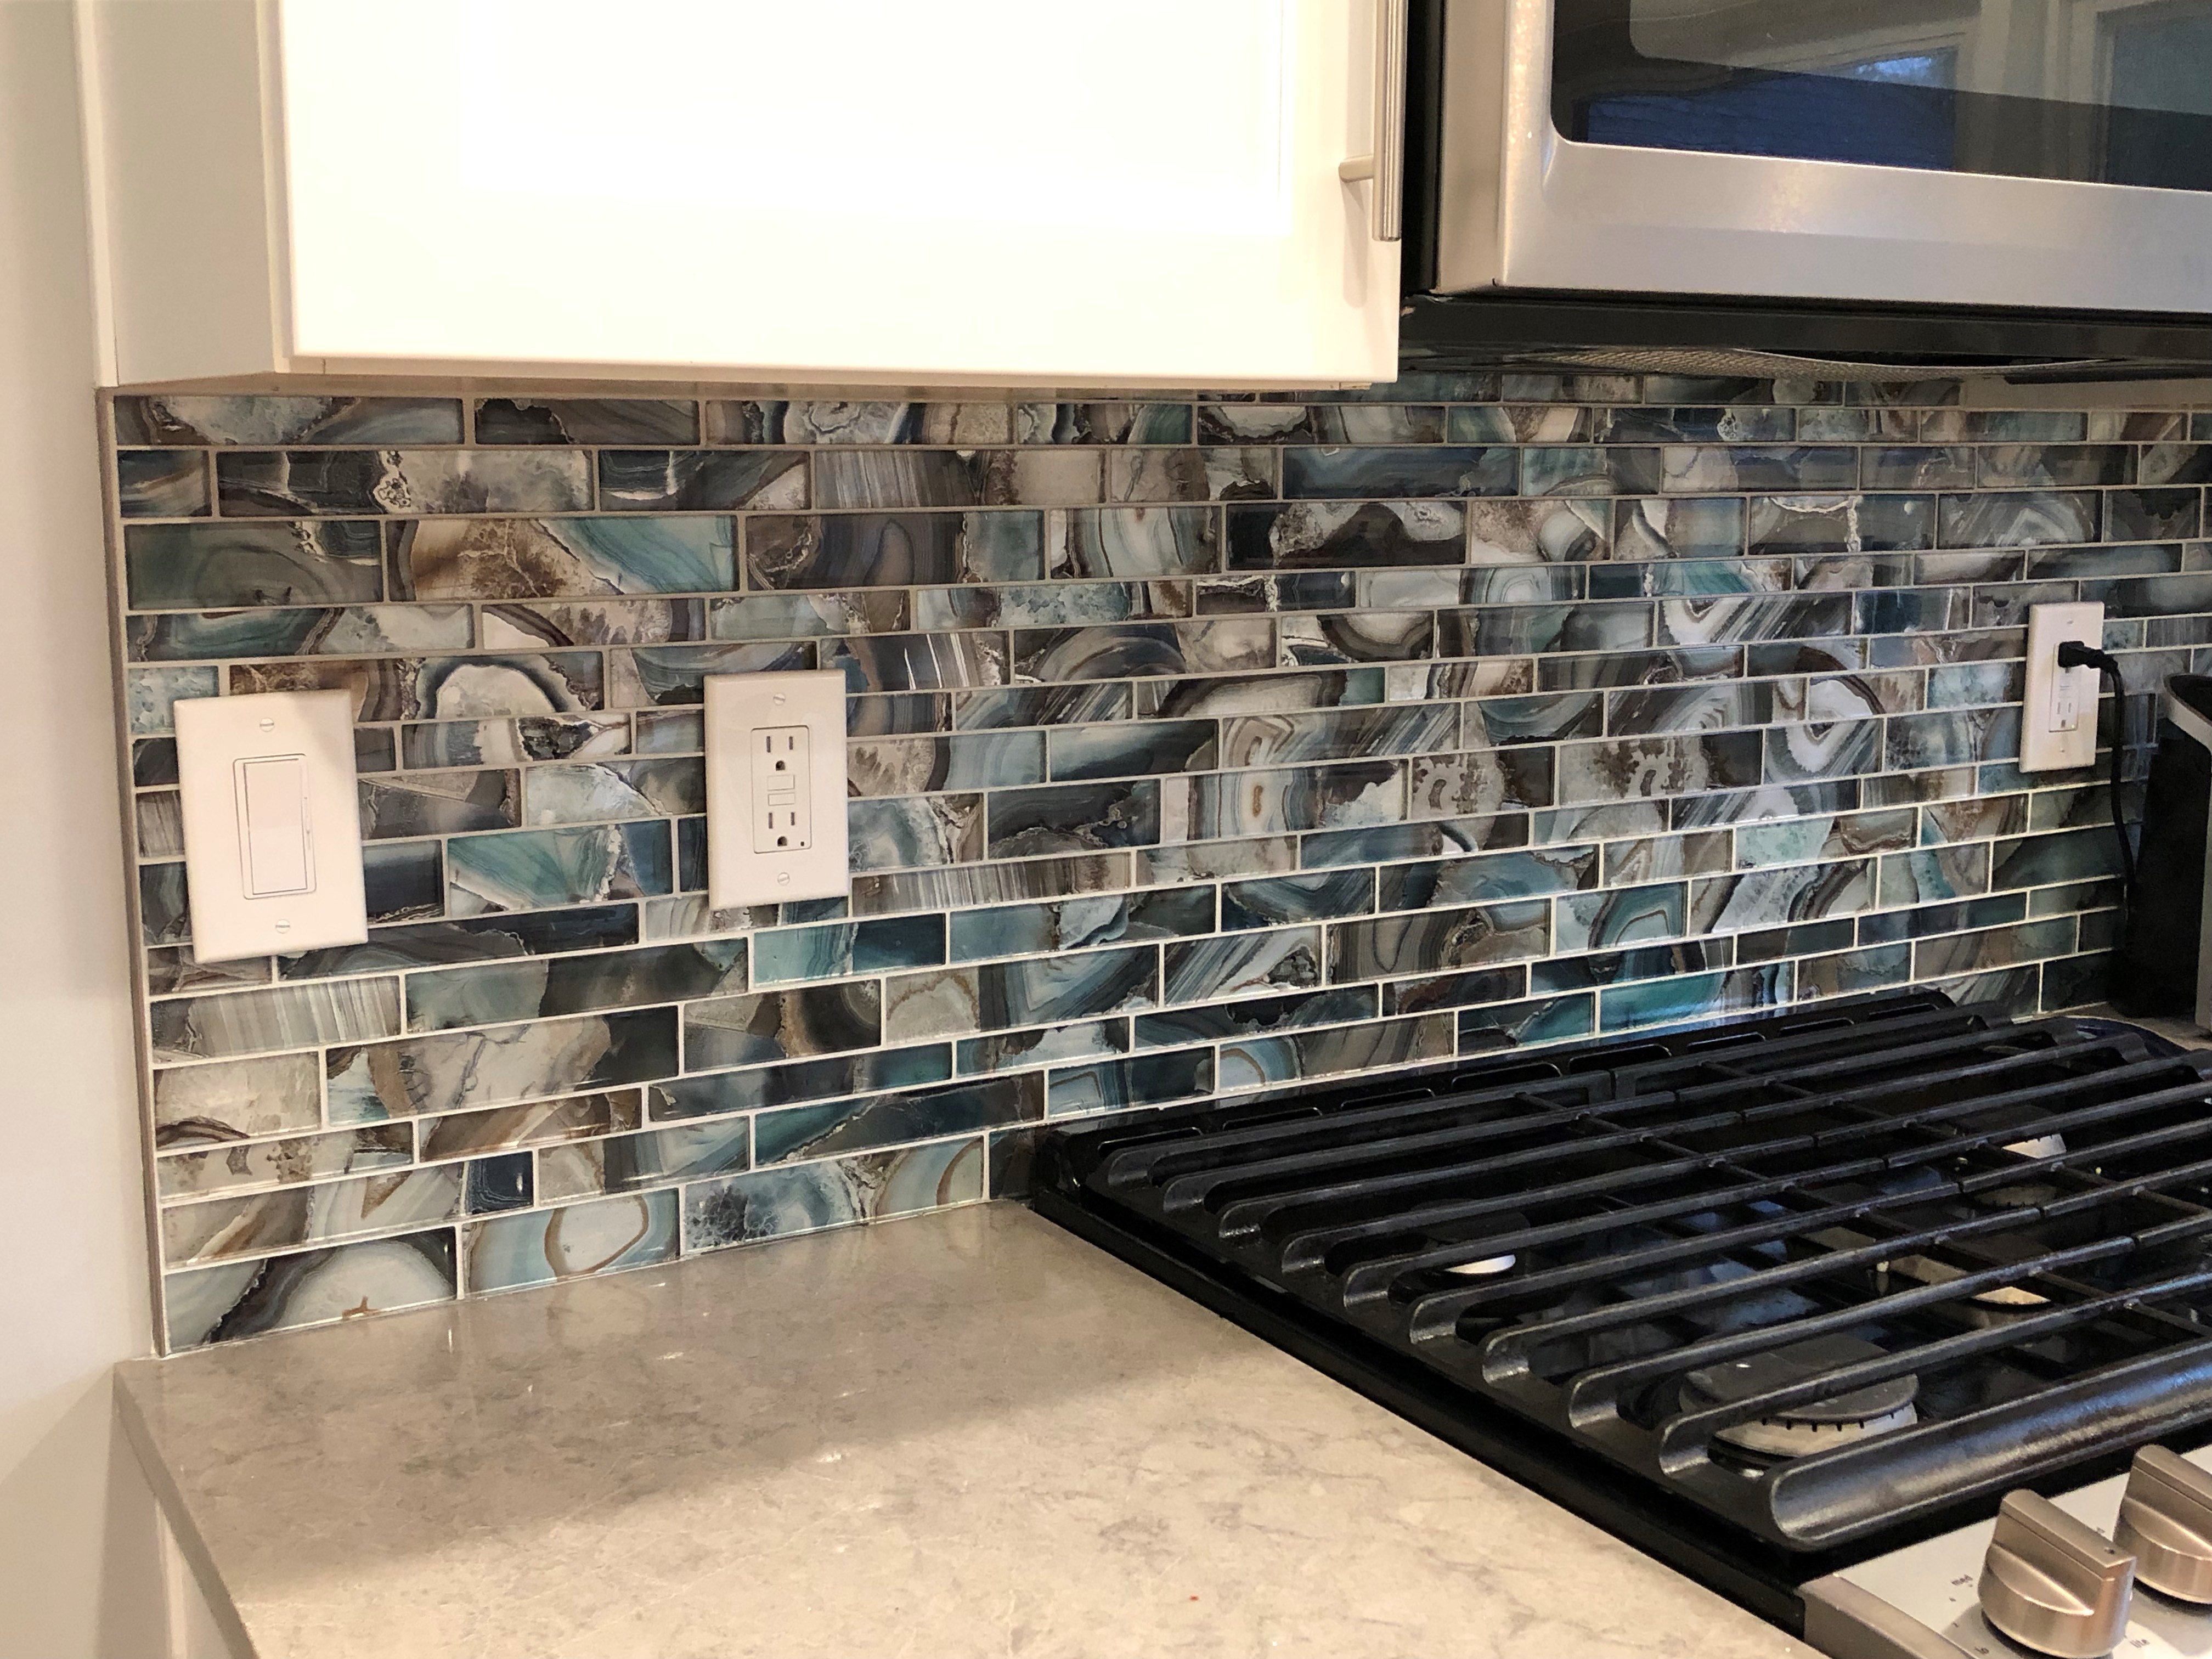 backsplash tile costs 2019 - BELK Tile